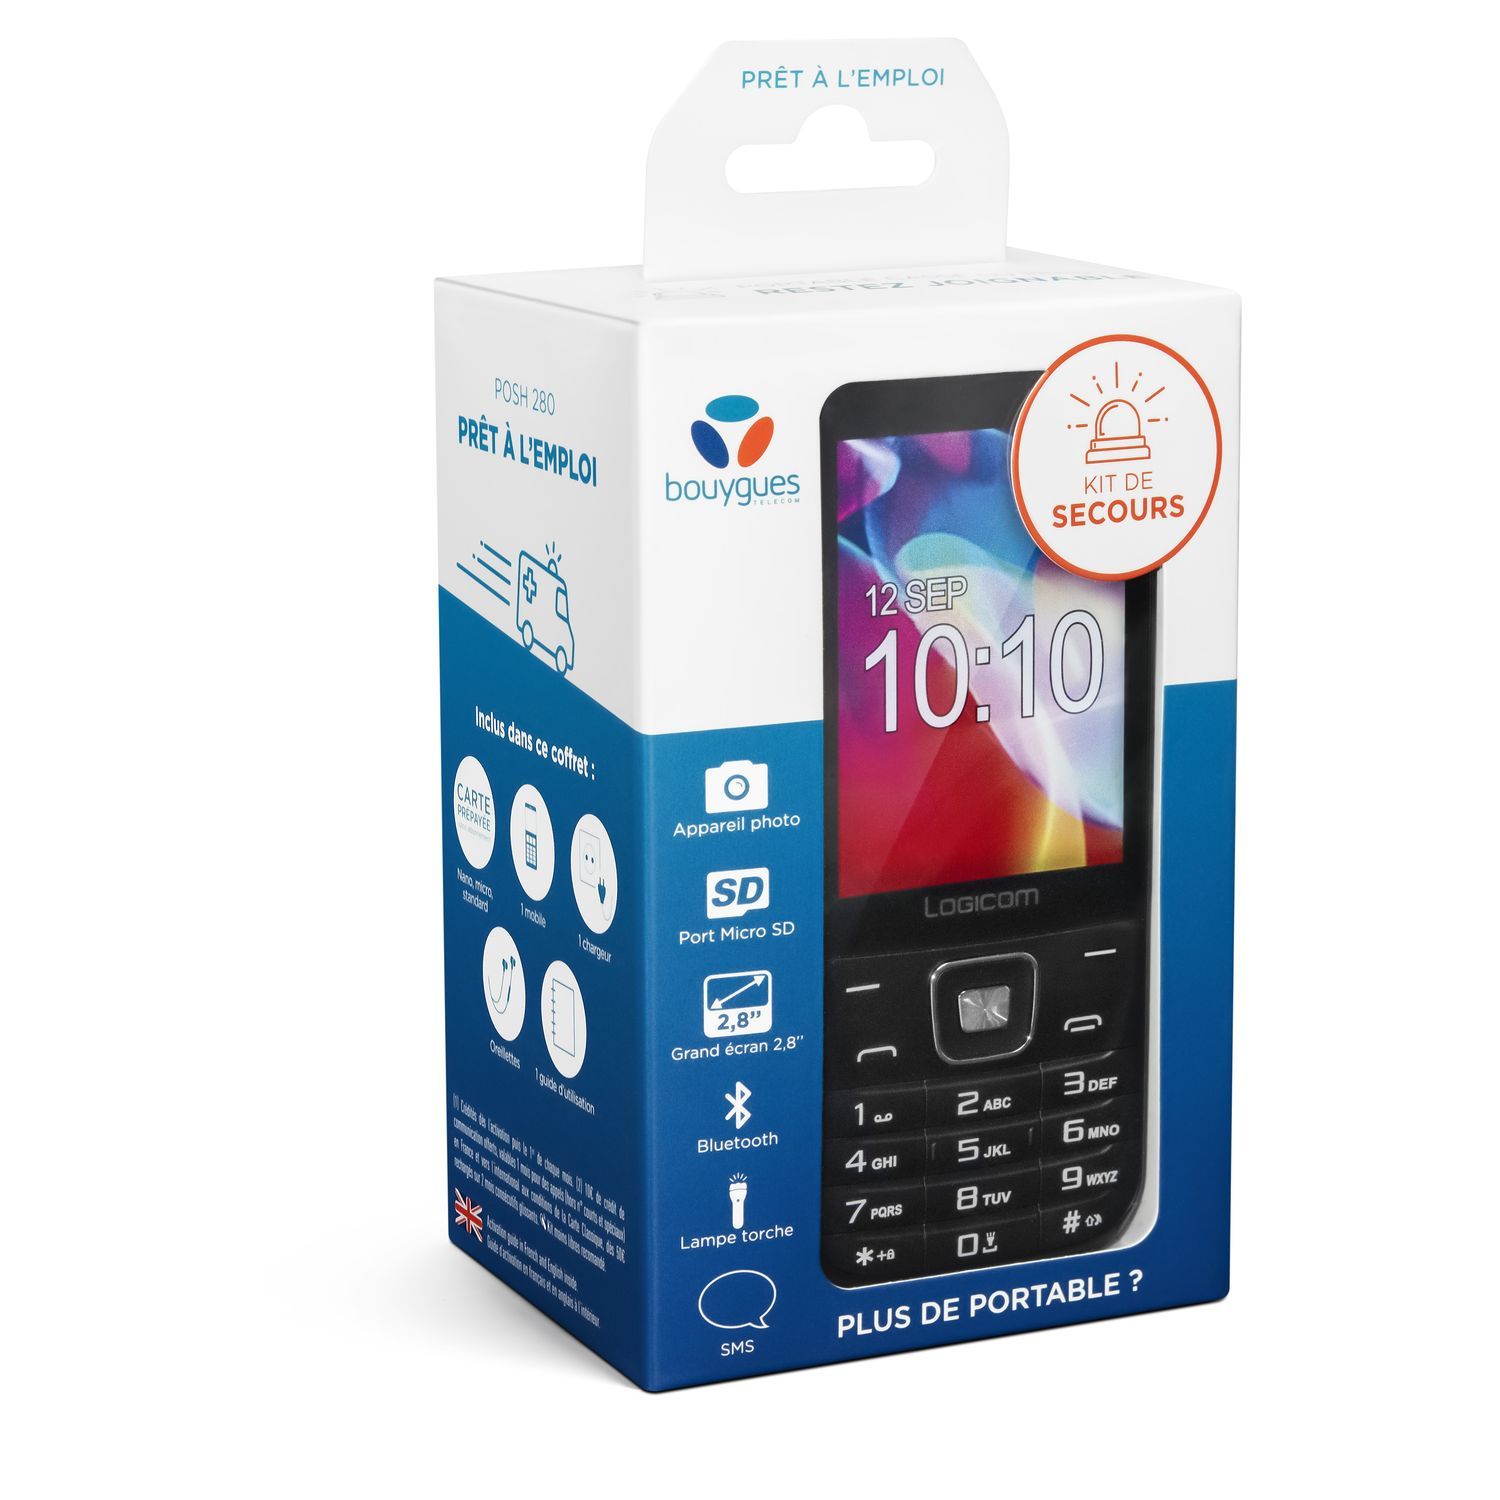 Coffret mobile Posh 280 noir + carte SIM prépayée + 1 chargeur + 1 kit  oreillette + guide d'utilisation